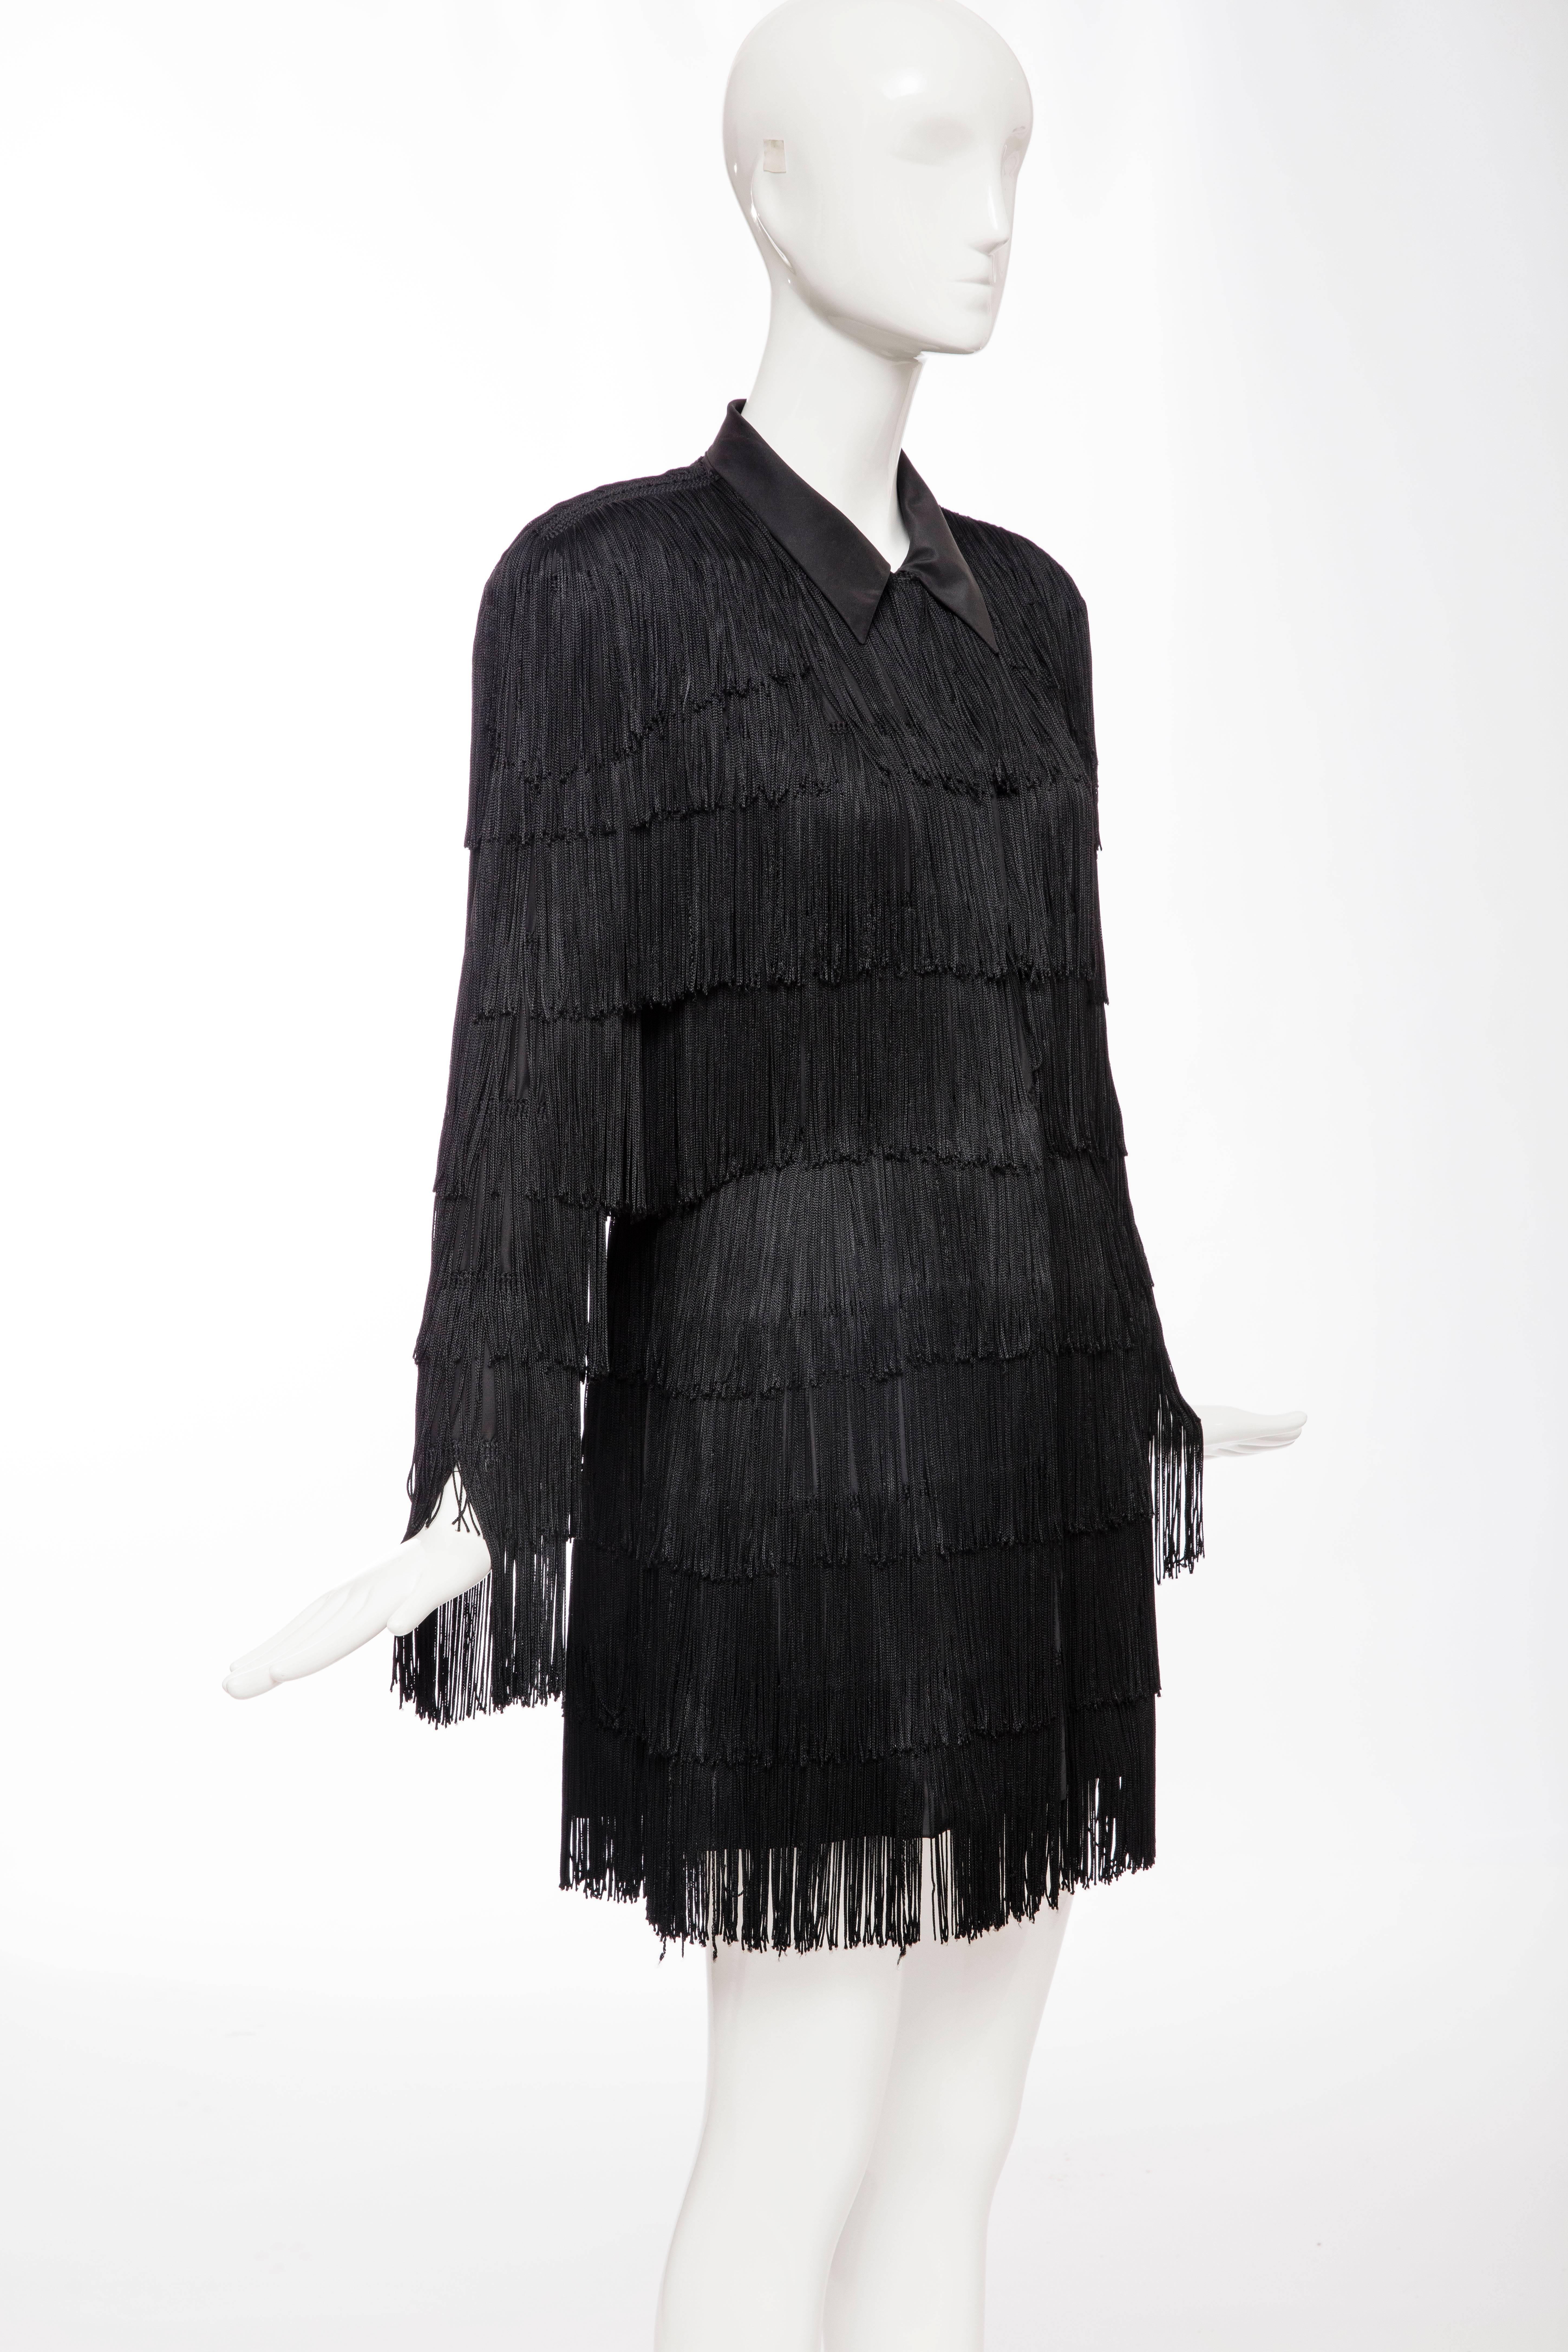 Norma Kamali OMO Black Fringe Long Jacket, Circa 1980's 1